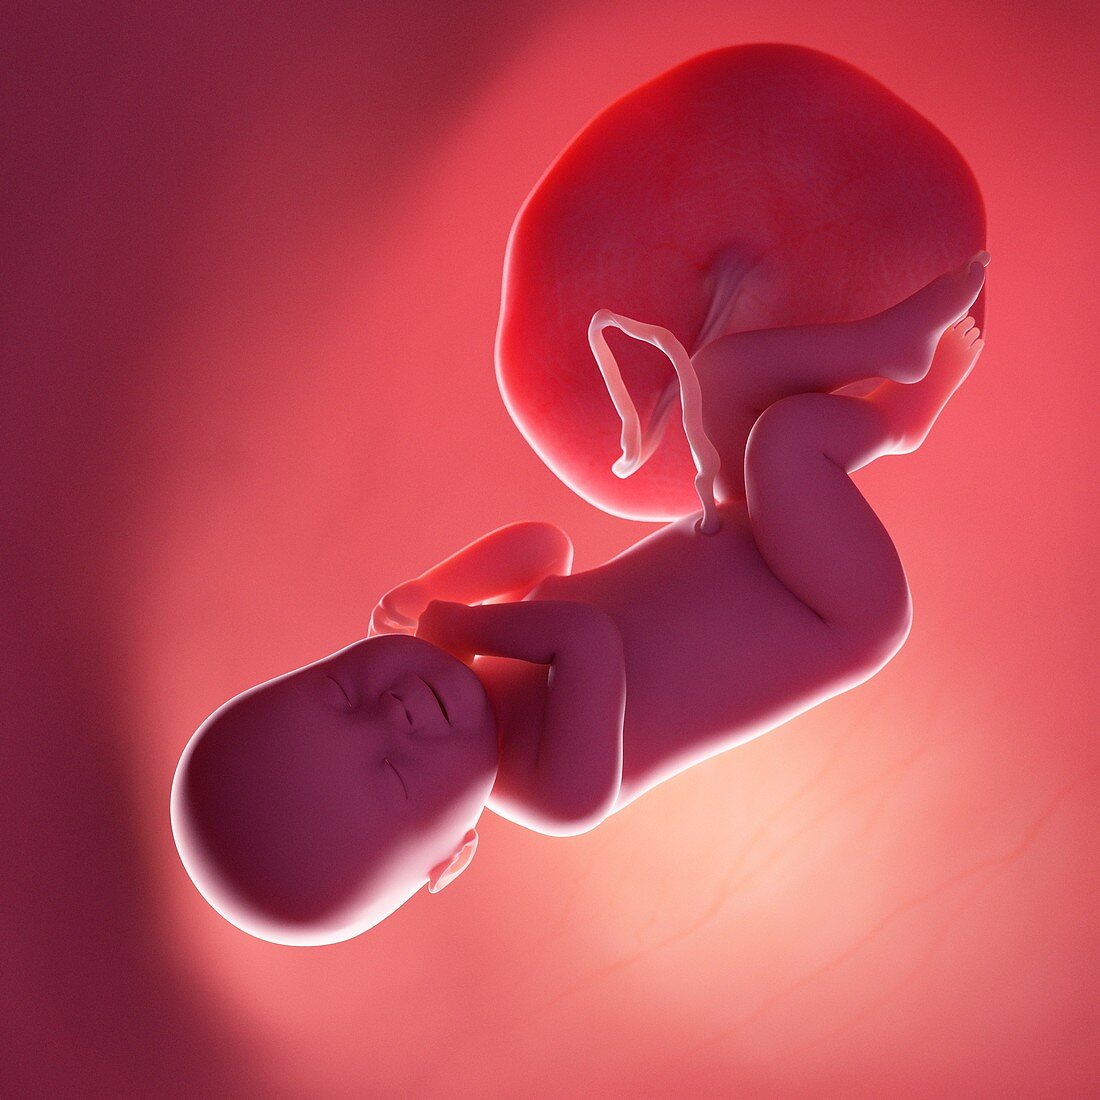 Fetus at week 40, illustration